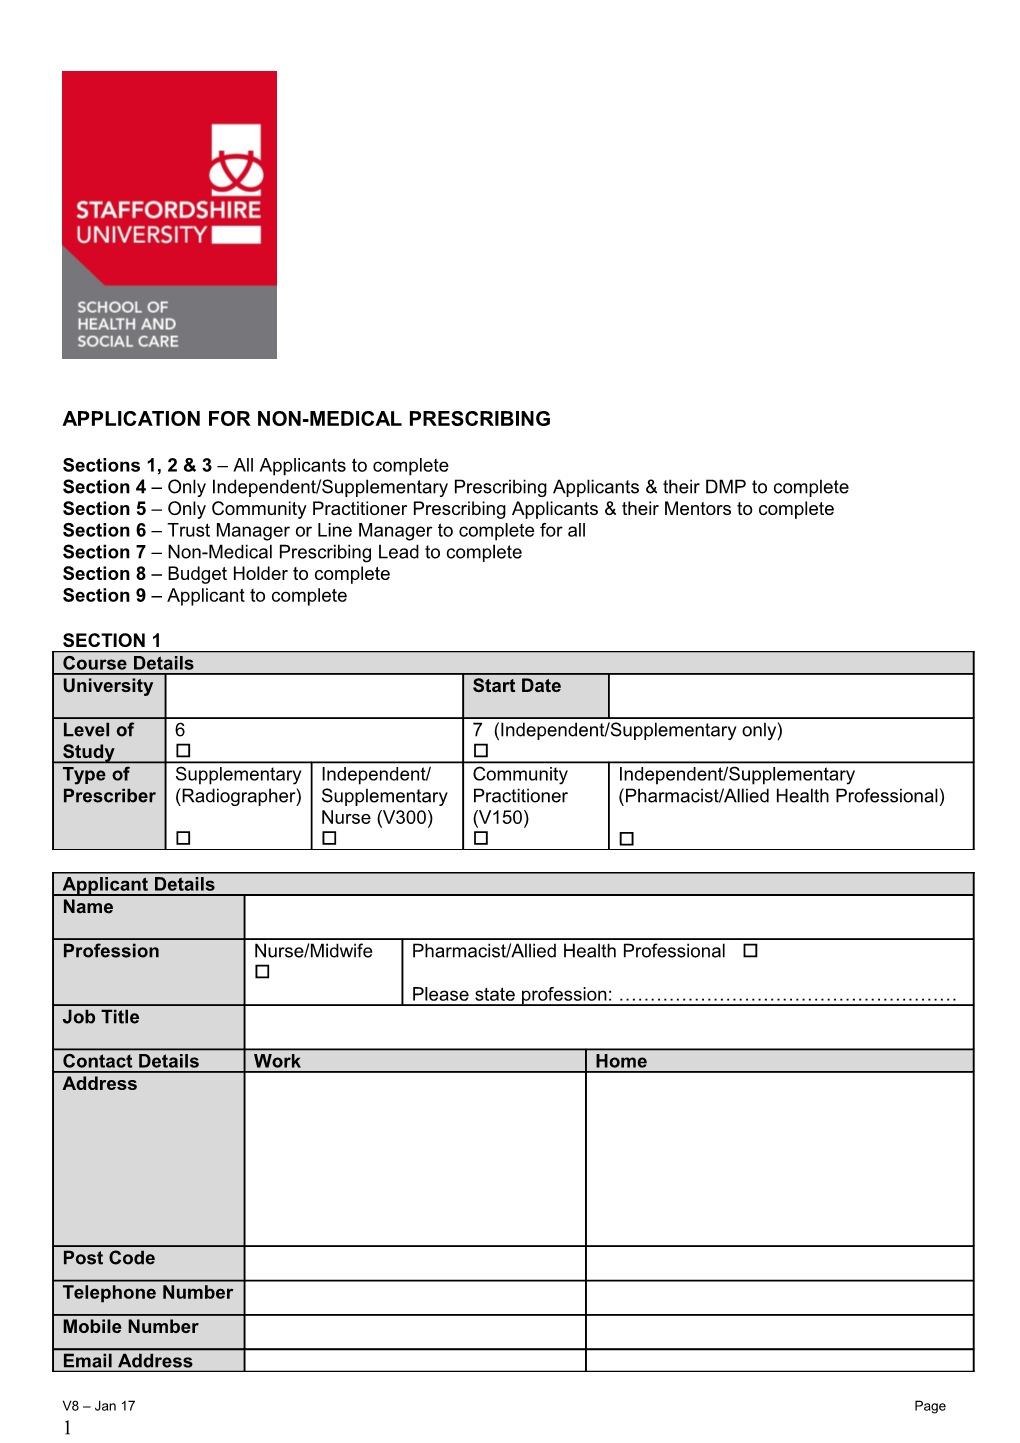 Application for Non-Medical Prescribing